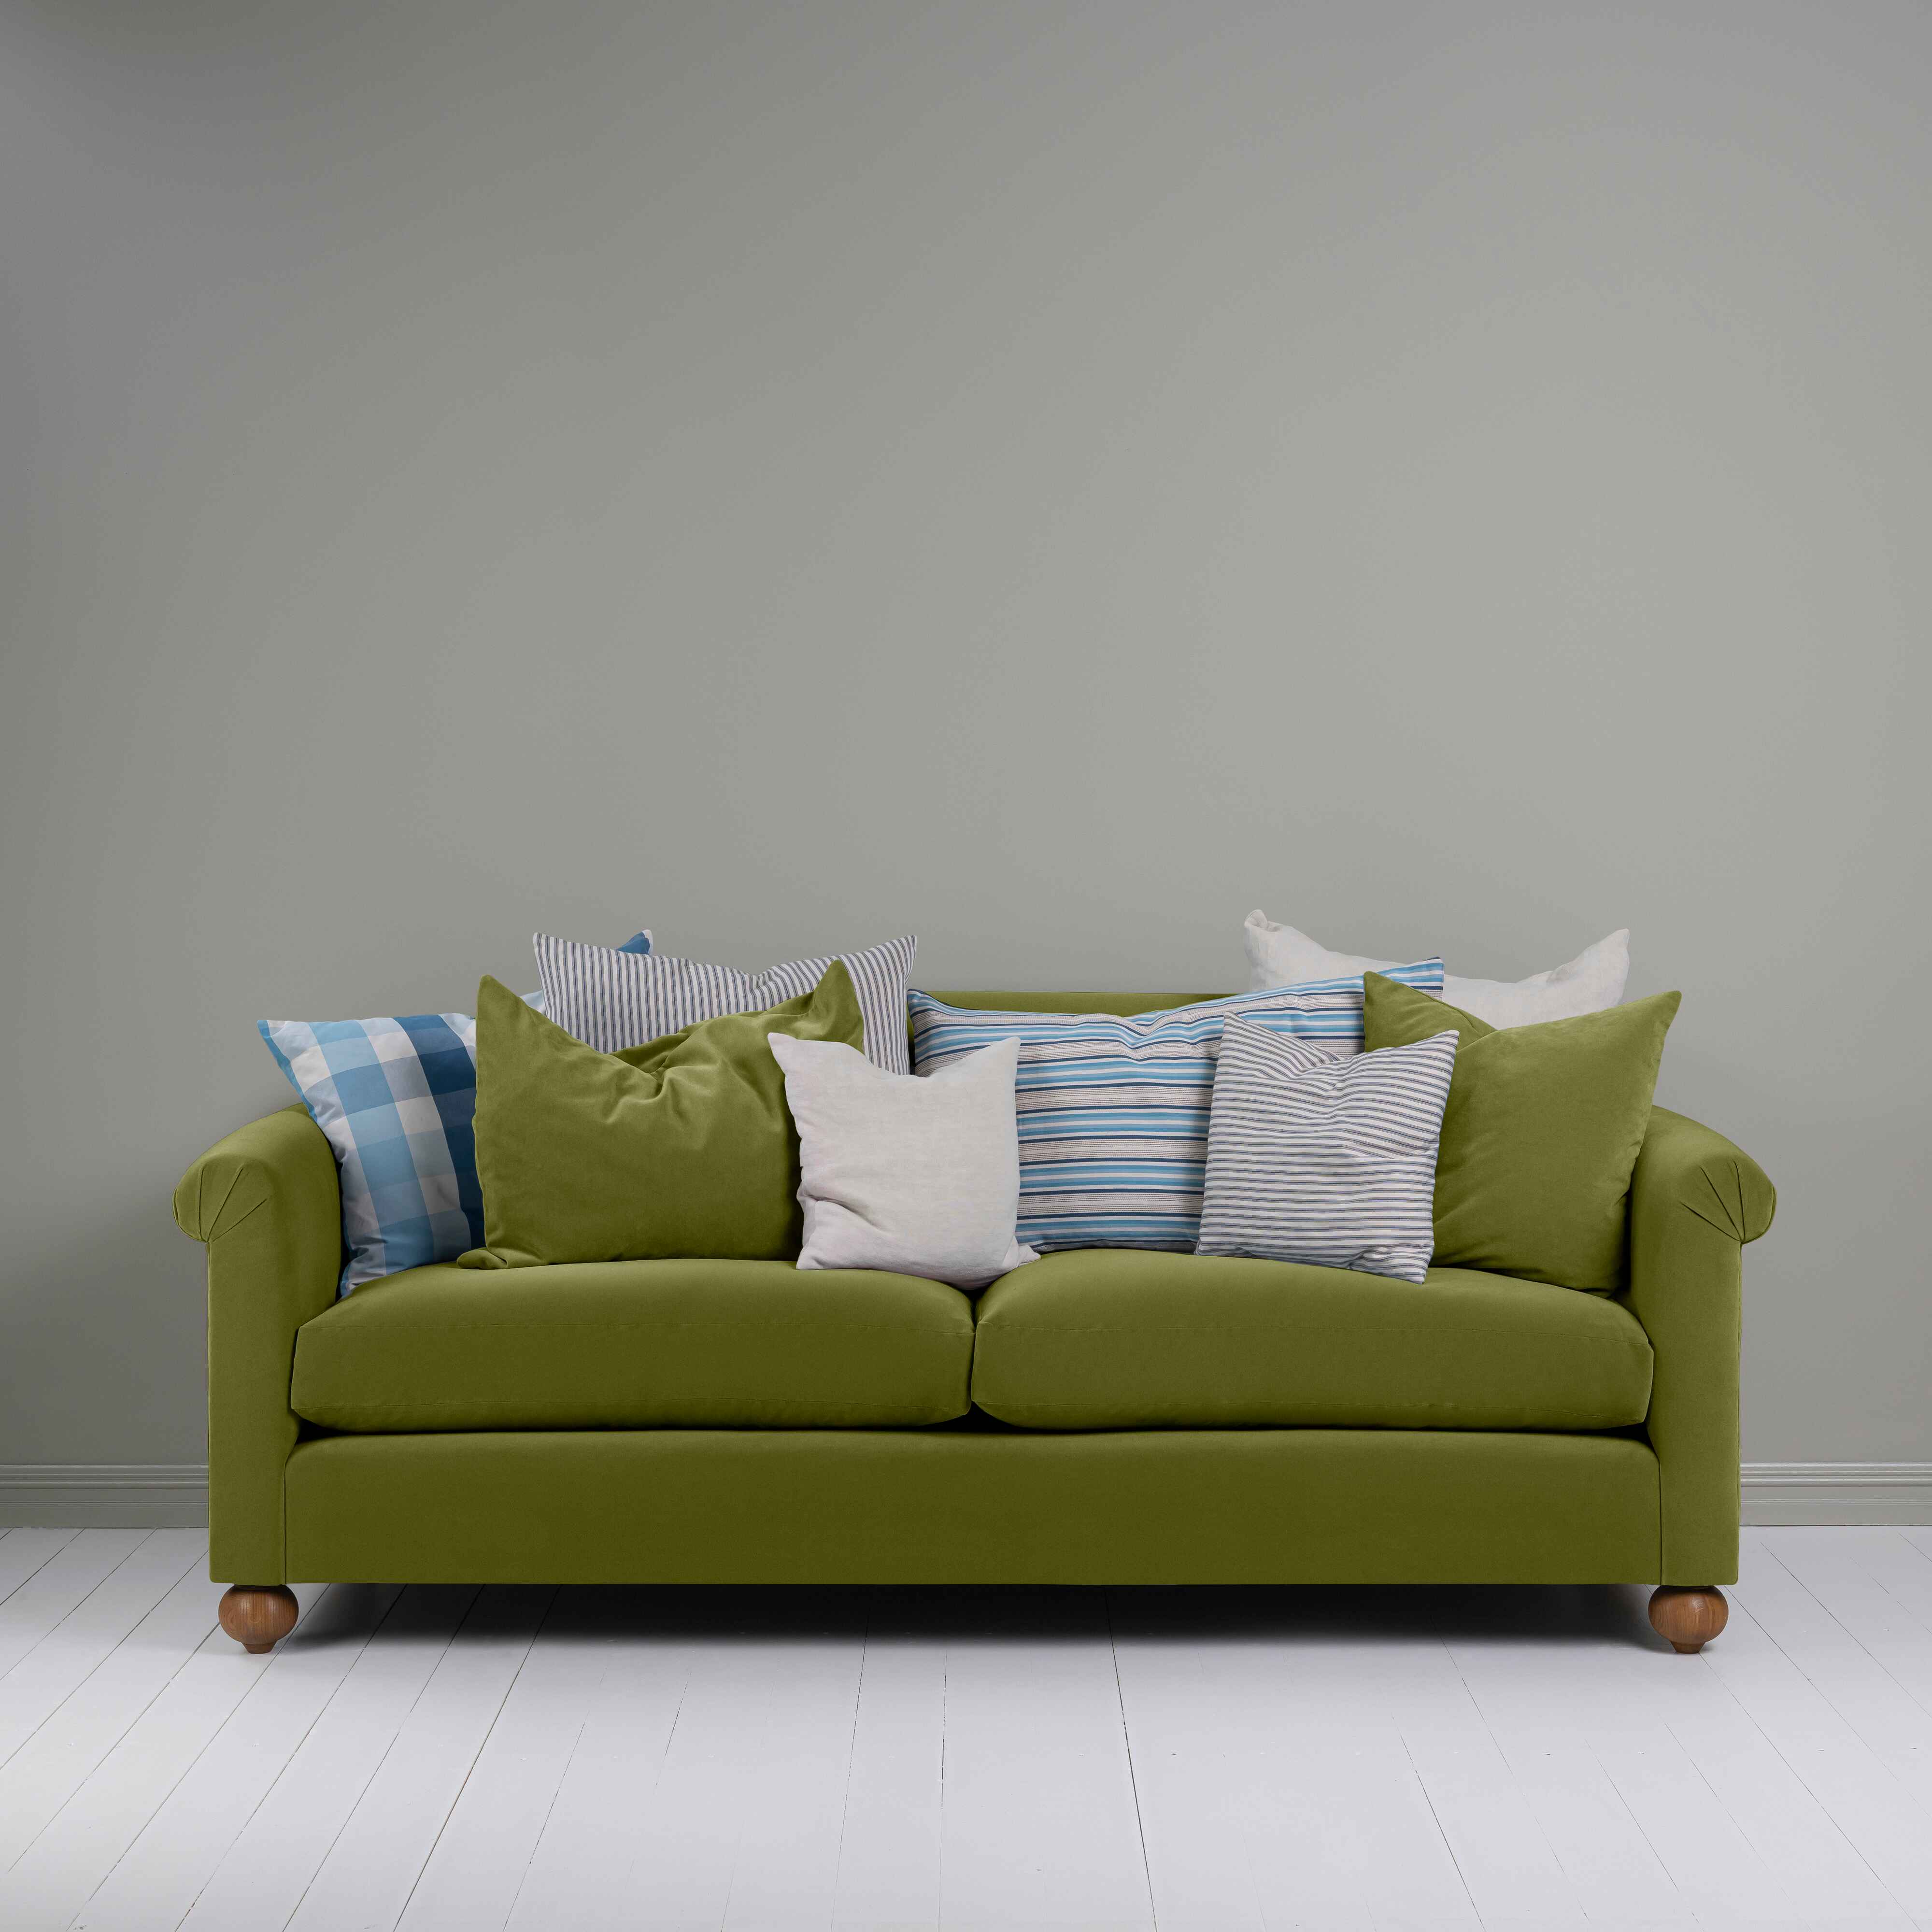  Dolittle 4 seater Sofa in Intelligent Velvet Lawn 